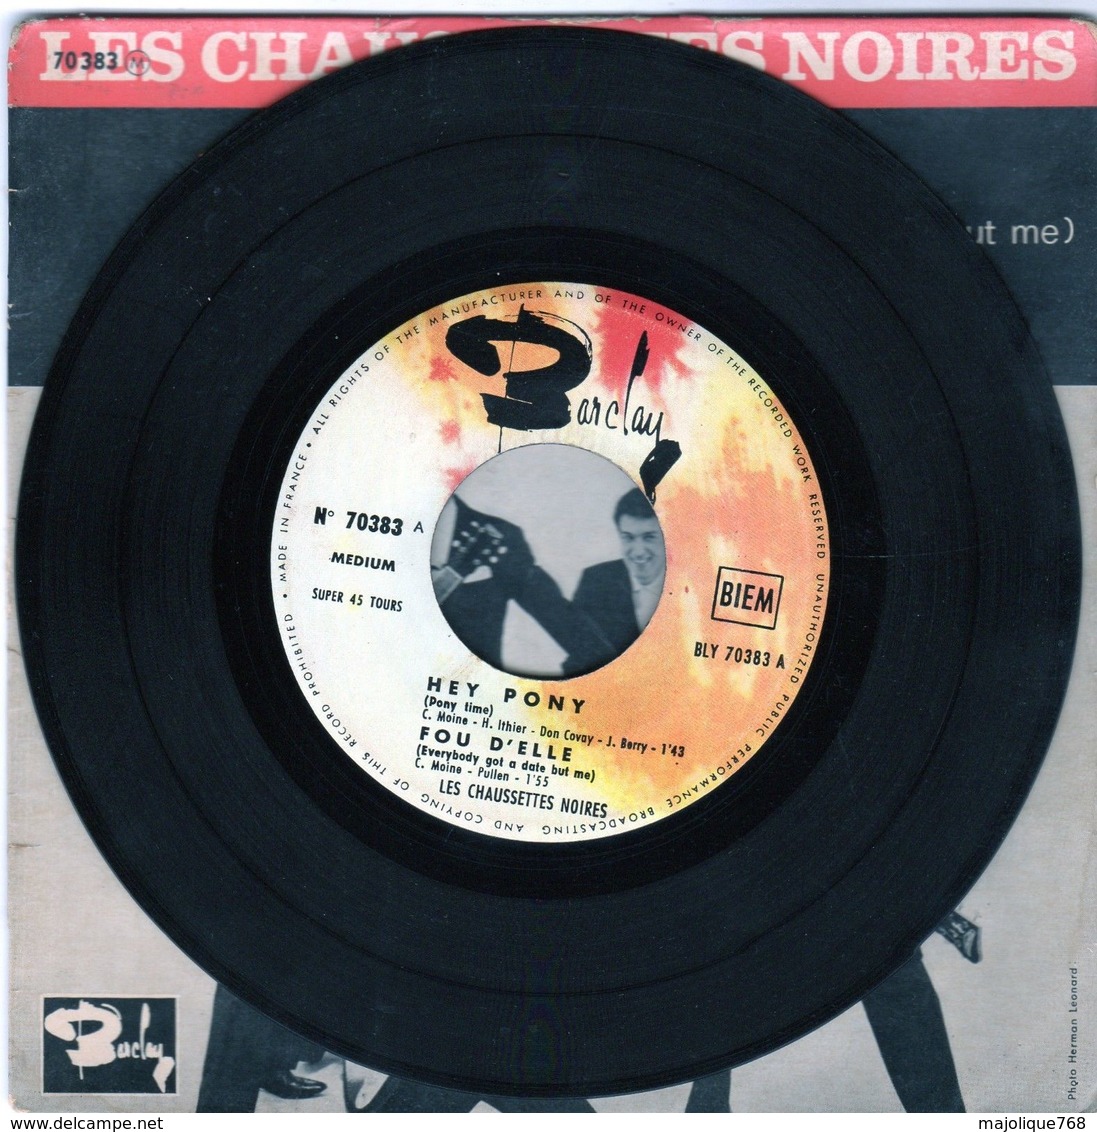 Disque Les Chaussettes Noires - Hey Pony - Barclay 70383 M - 1961 - Rock